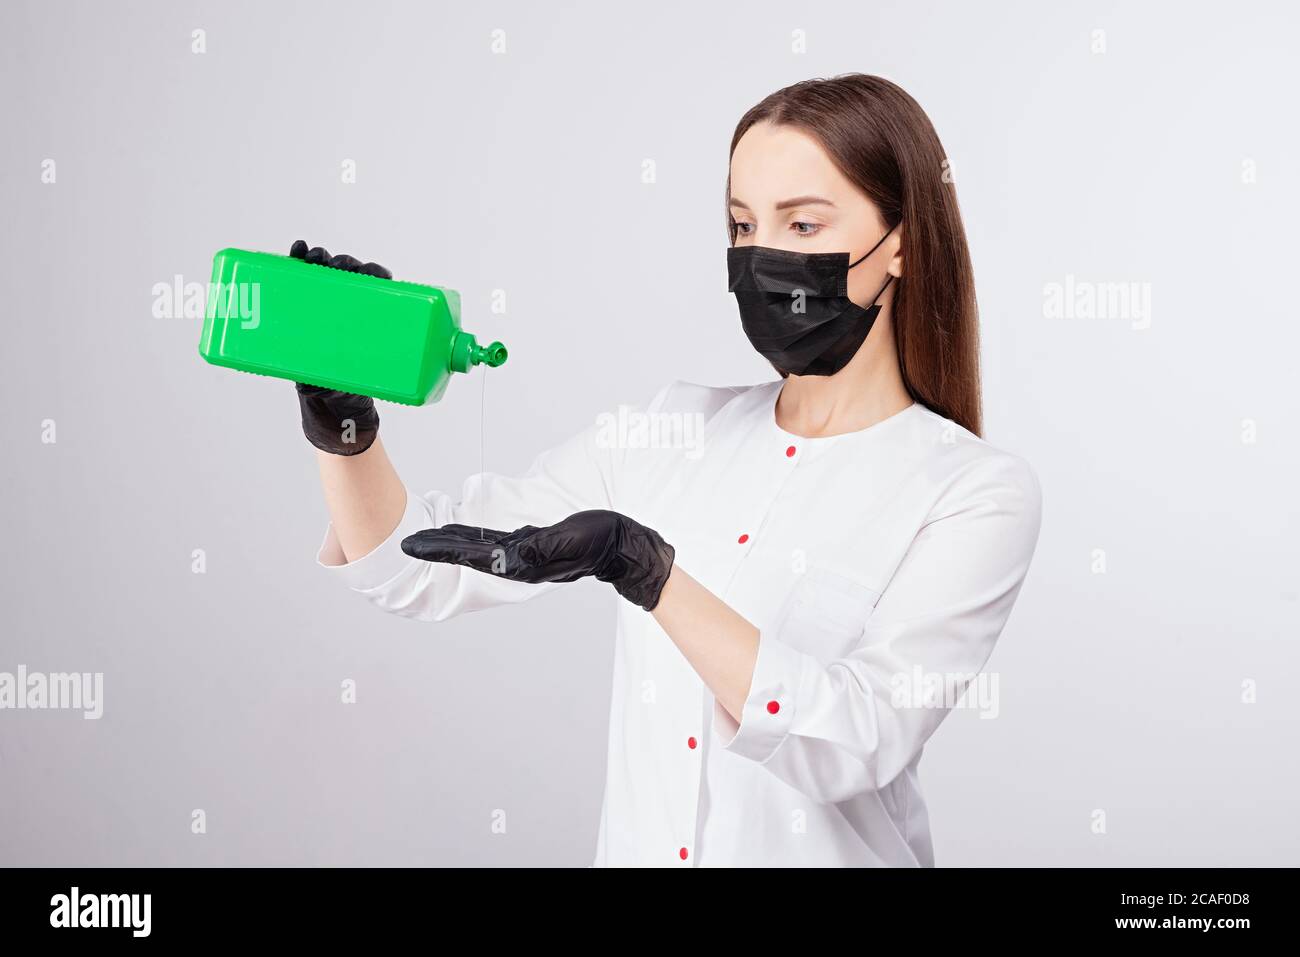 Mädchen in schwarzen Handschuhen und Maske gießt Flüssigkeit aus grünem Glas, Desinfektionslösung, hellgrauer Hintergrund, Frau mit langen Haaren in weißer Kleidung Stockfoto